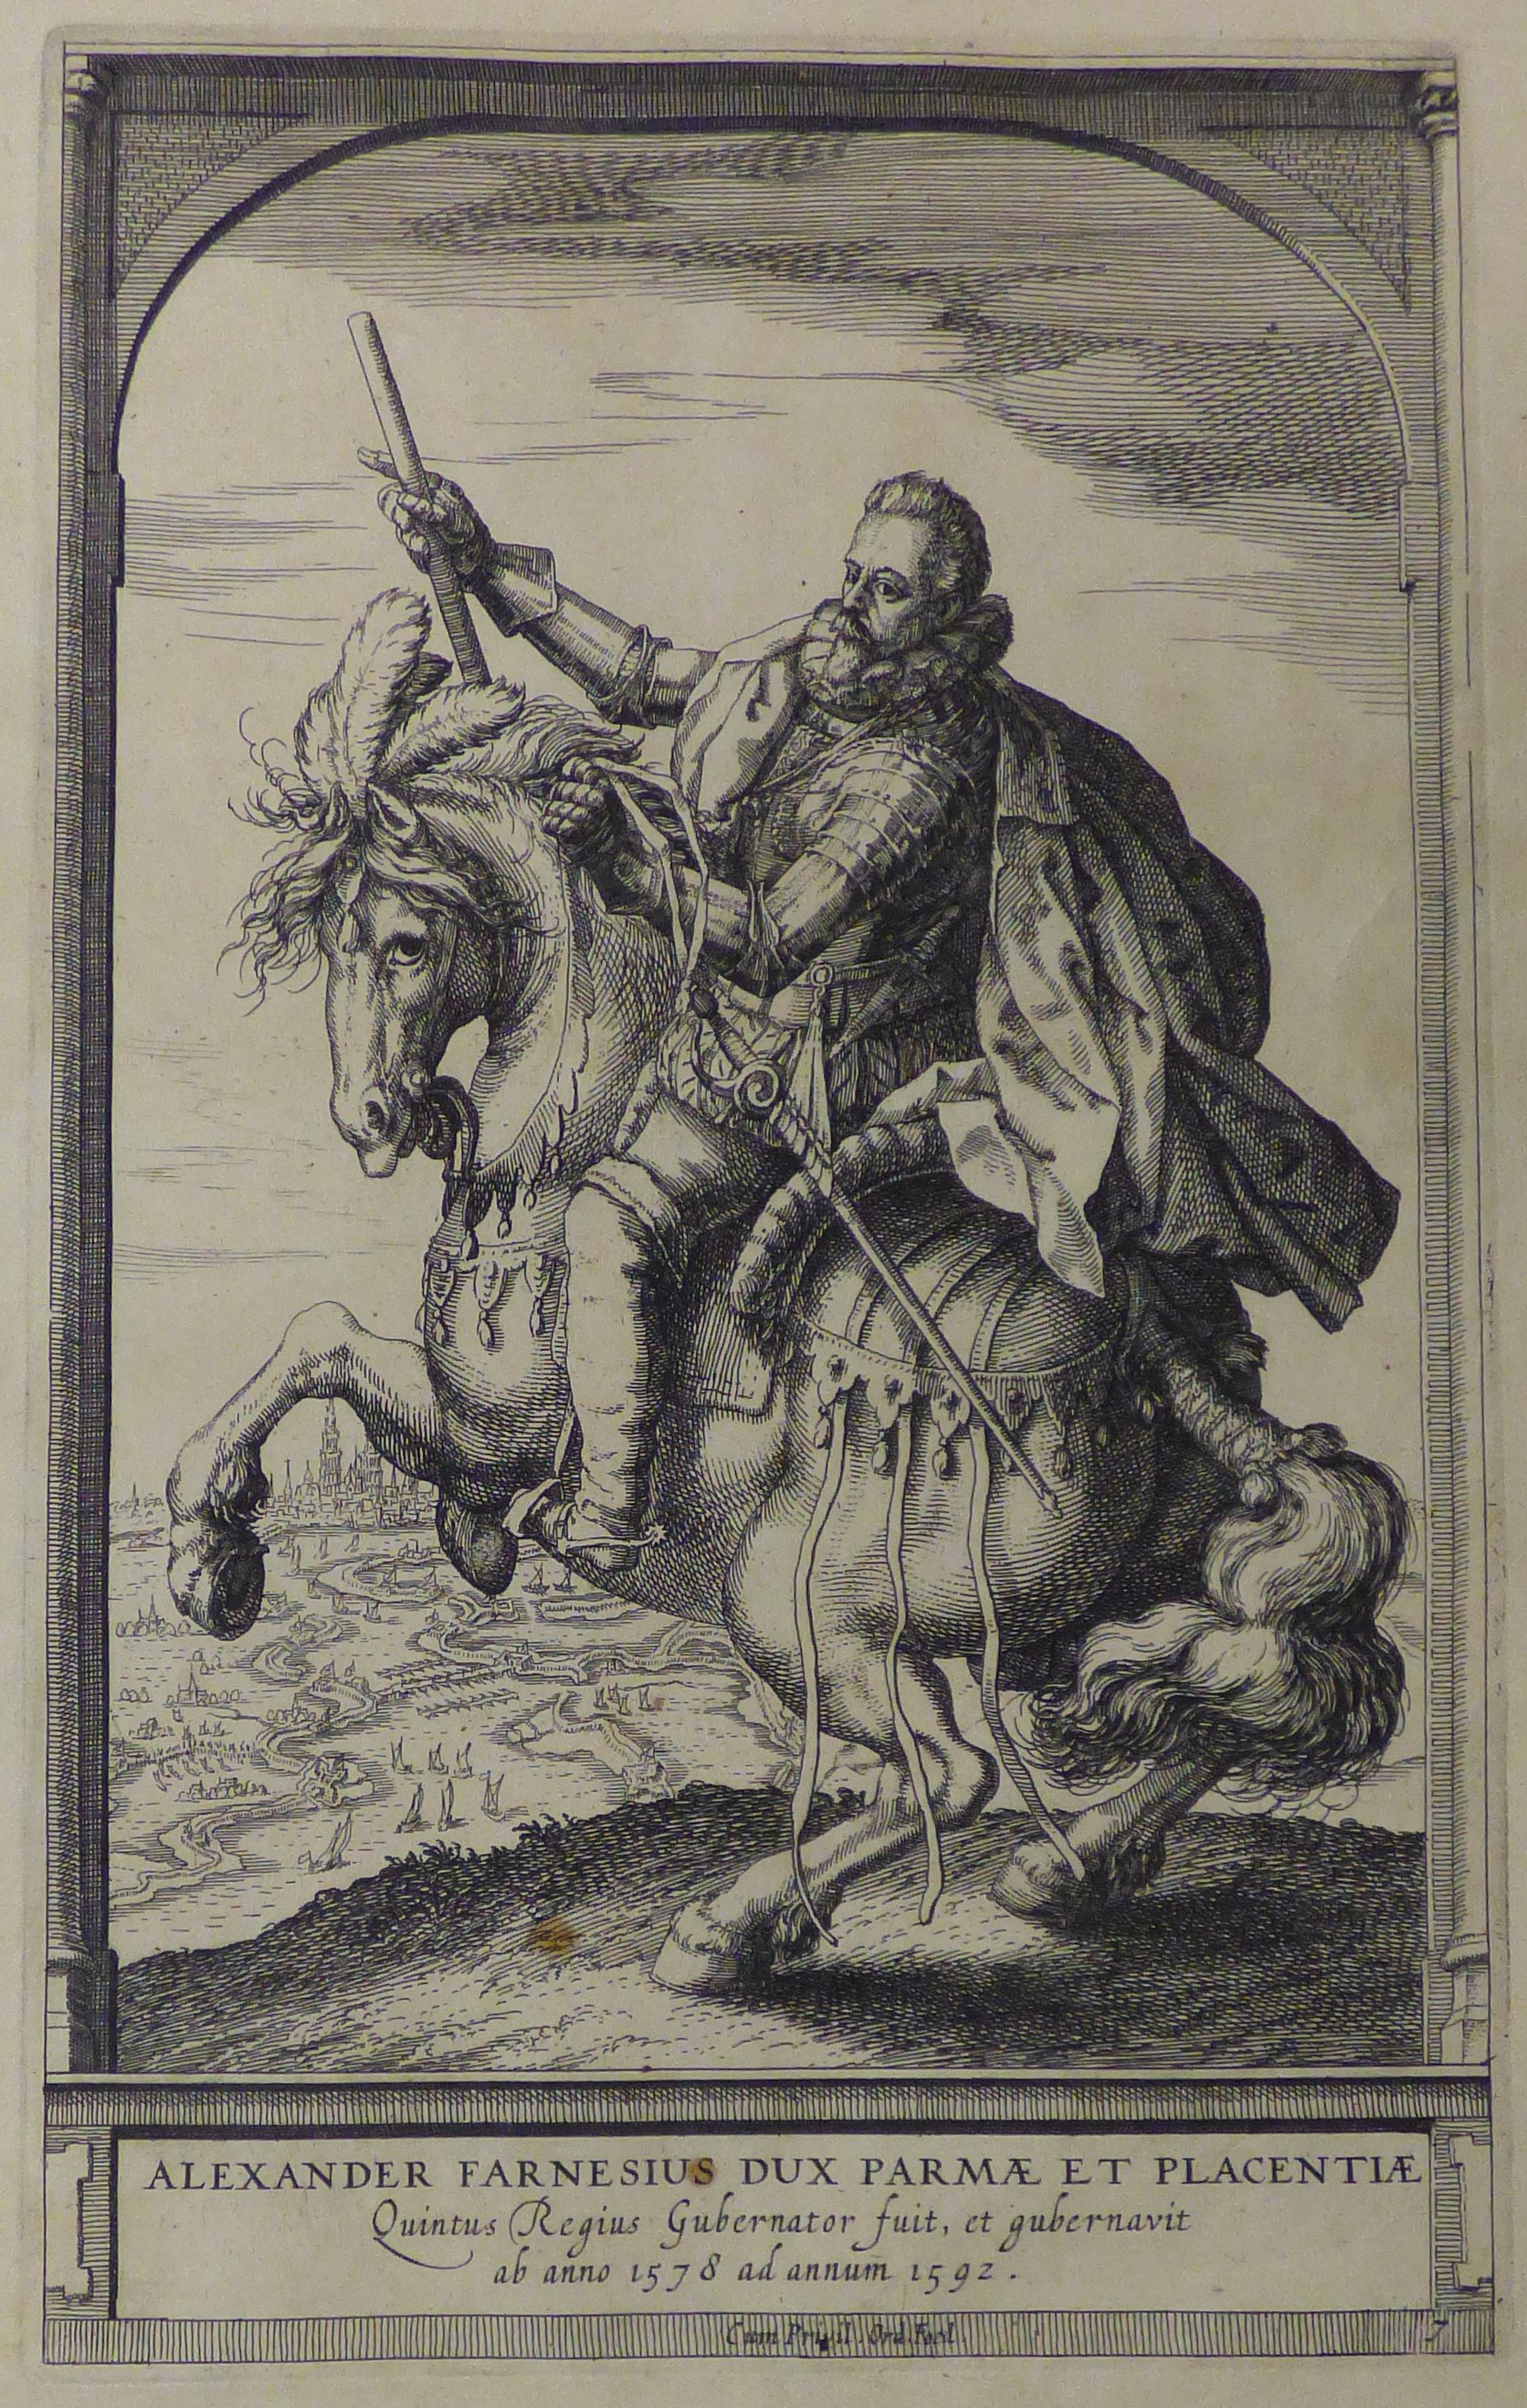 Alessandro Farnese, als Statthalter der Niederlande dargestellt, um 1620. (Städtisches Museum Schloss Rheydt CC BY)